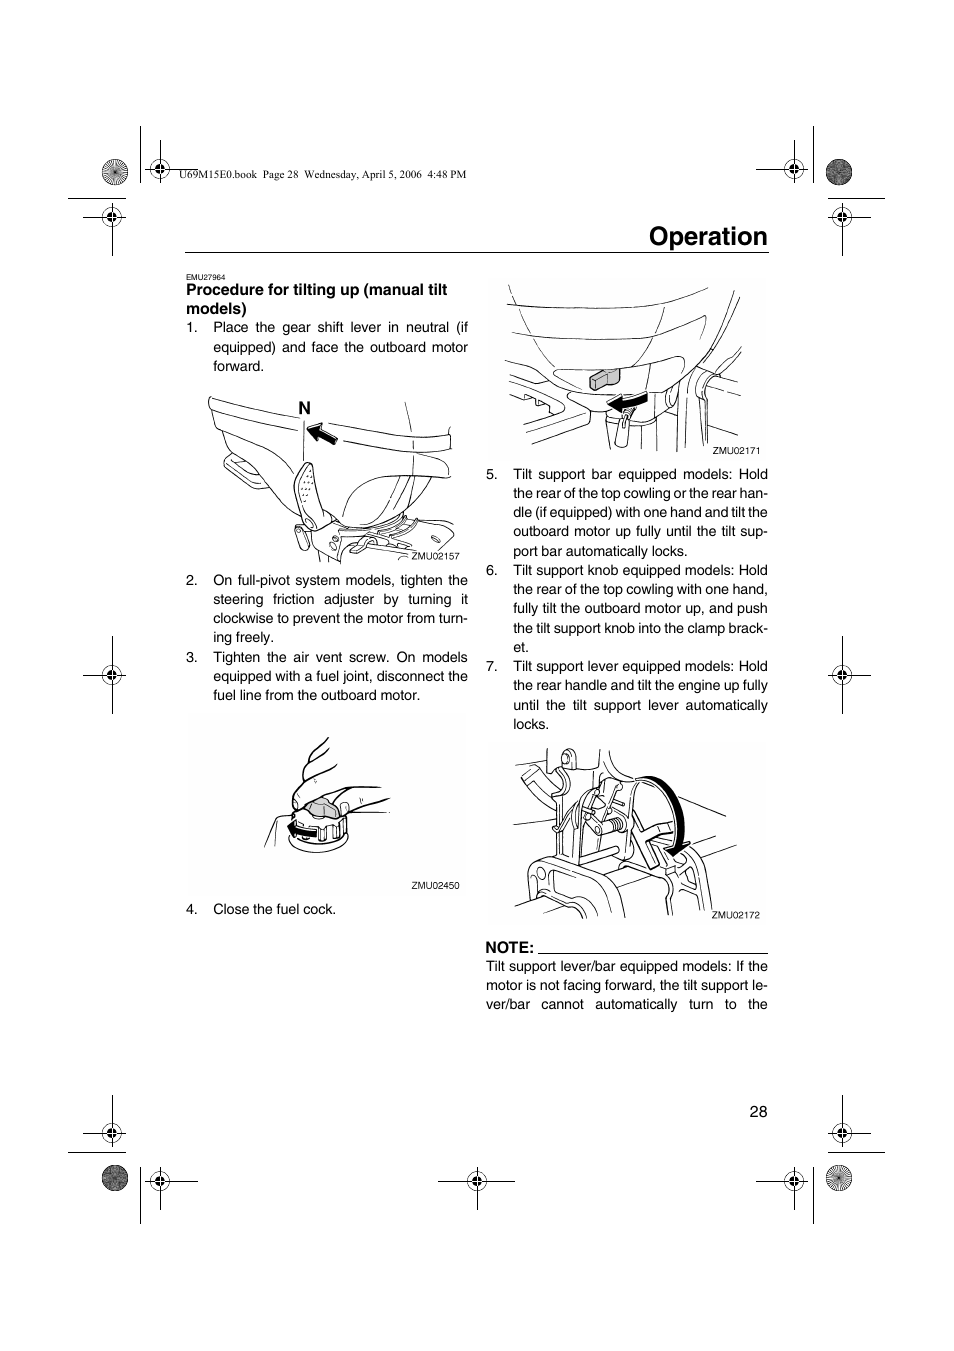 Procedure for tilting up, Manual tilt models), Operation | Yamaha F25 User  Manual | Page 33 / 66 | Original mode